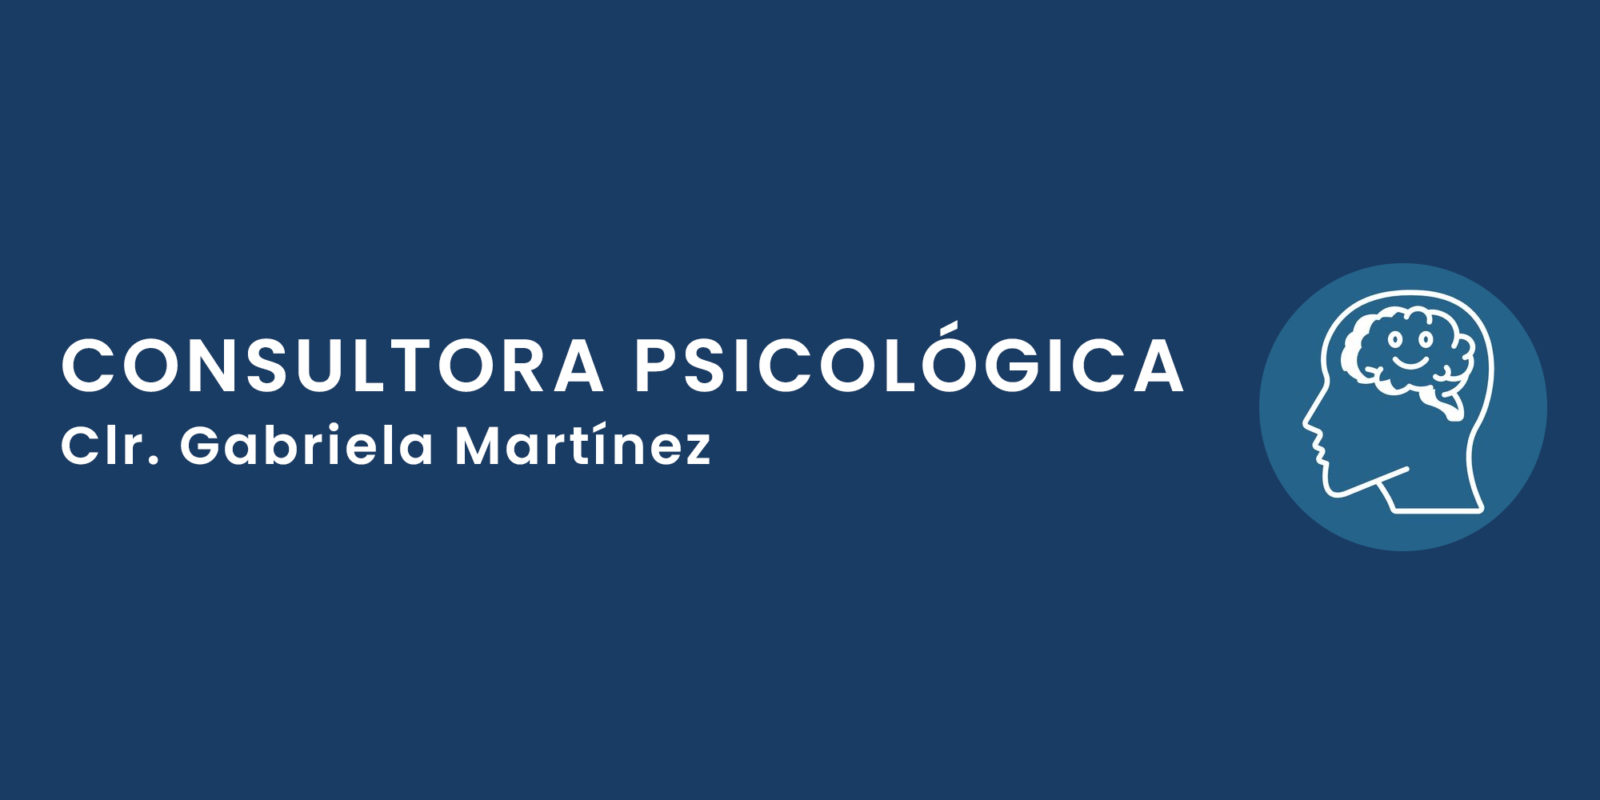 Consultora Psicológica Gabriela Martínez